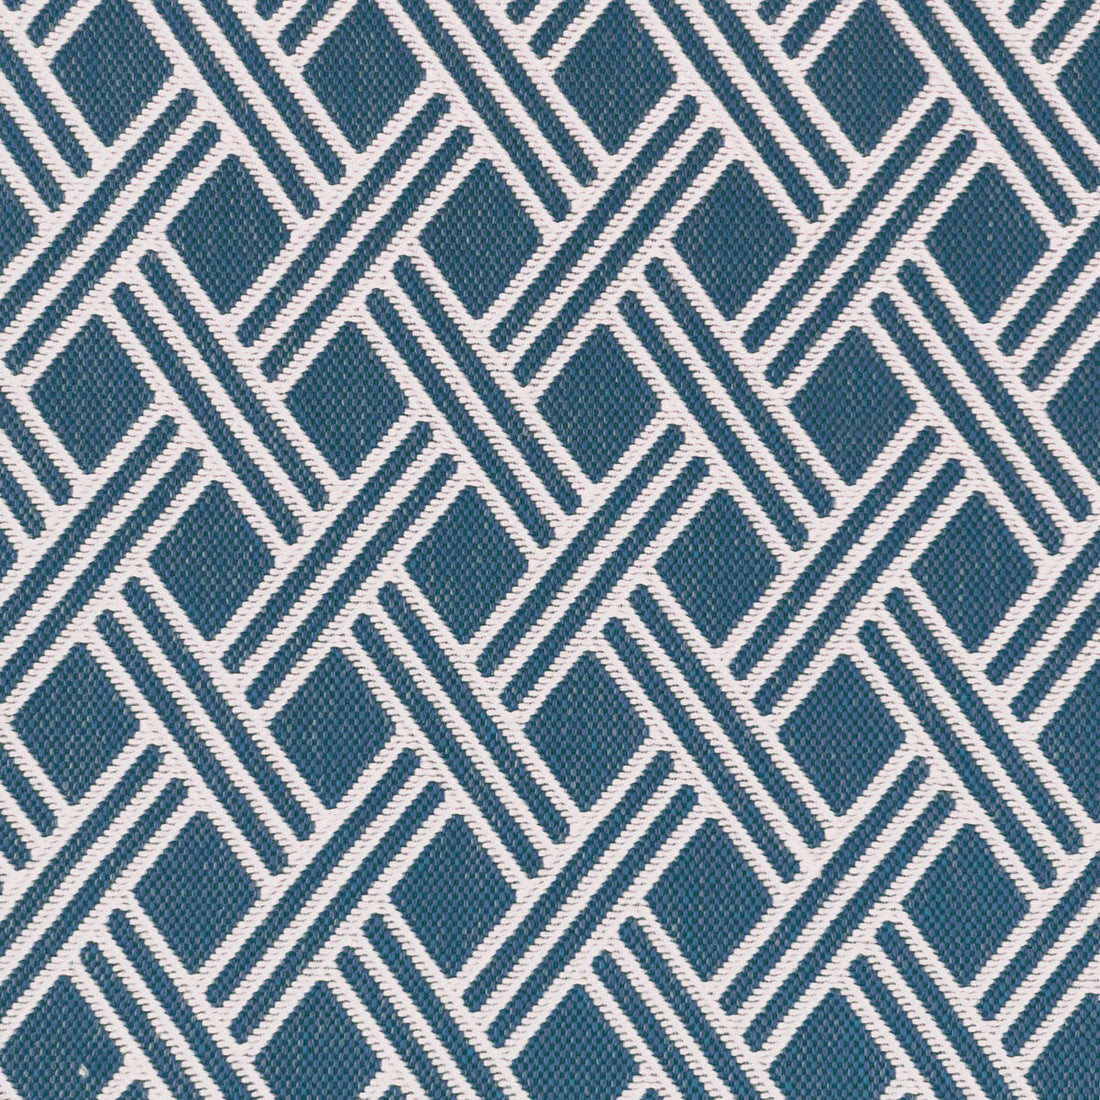 Dorcas fabric in azul color - pattern LCT1060.006.0 - by Gaston y Daniela in the Lorenzo Castillo VI collection